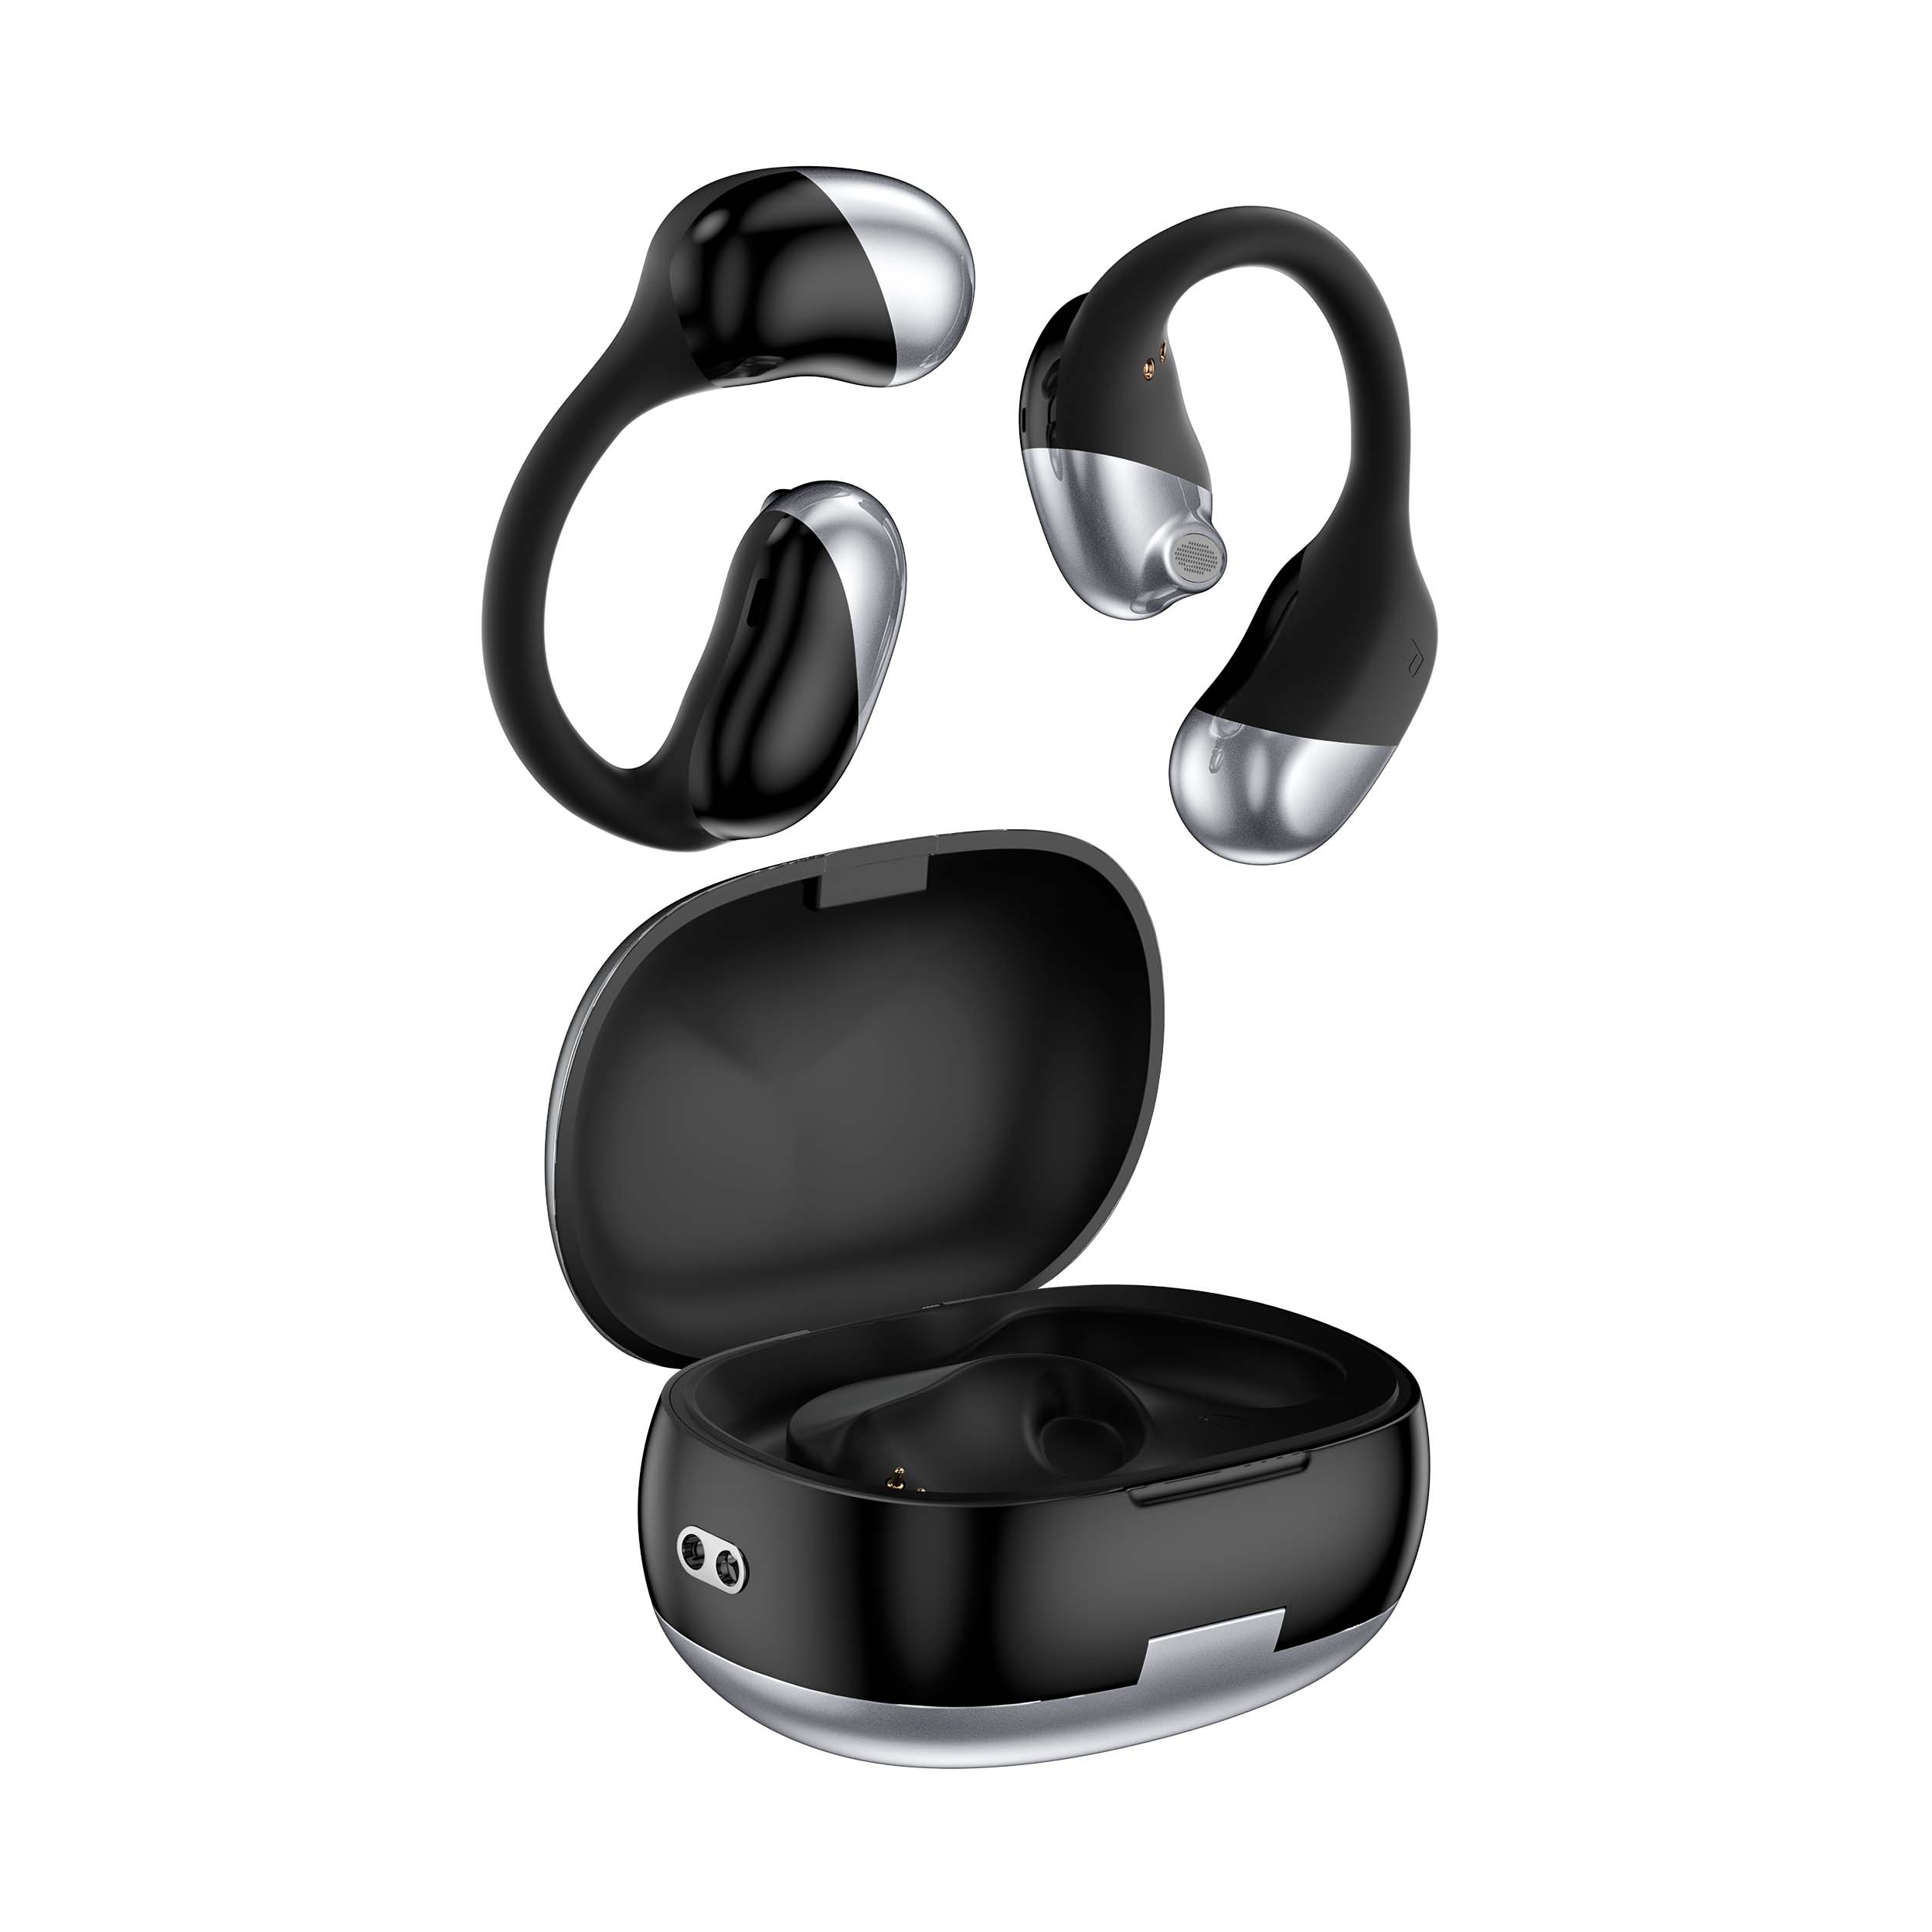 新しいデザインのカスタム OWS オープン ワイヤレス Bluetooth ヘッドセット、ノイズ低減のためのスピーカーと有利な価格